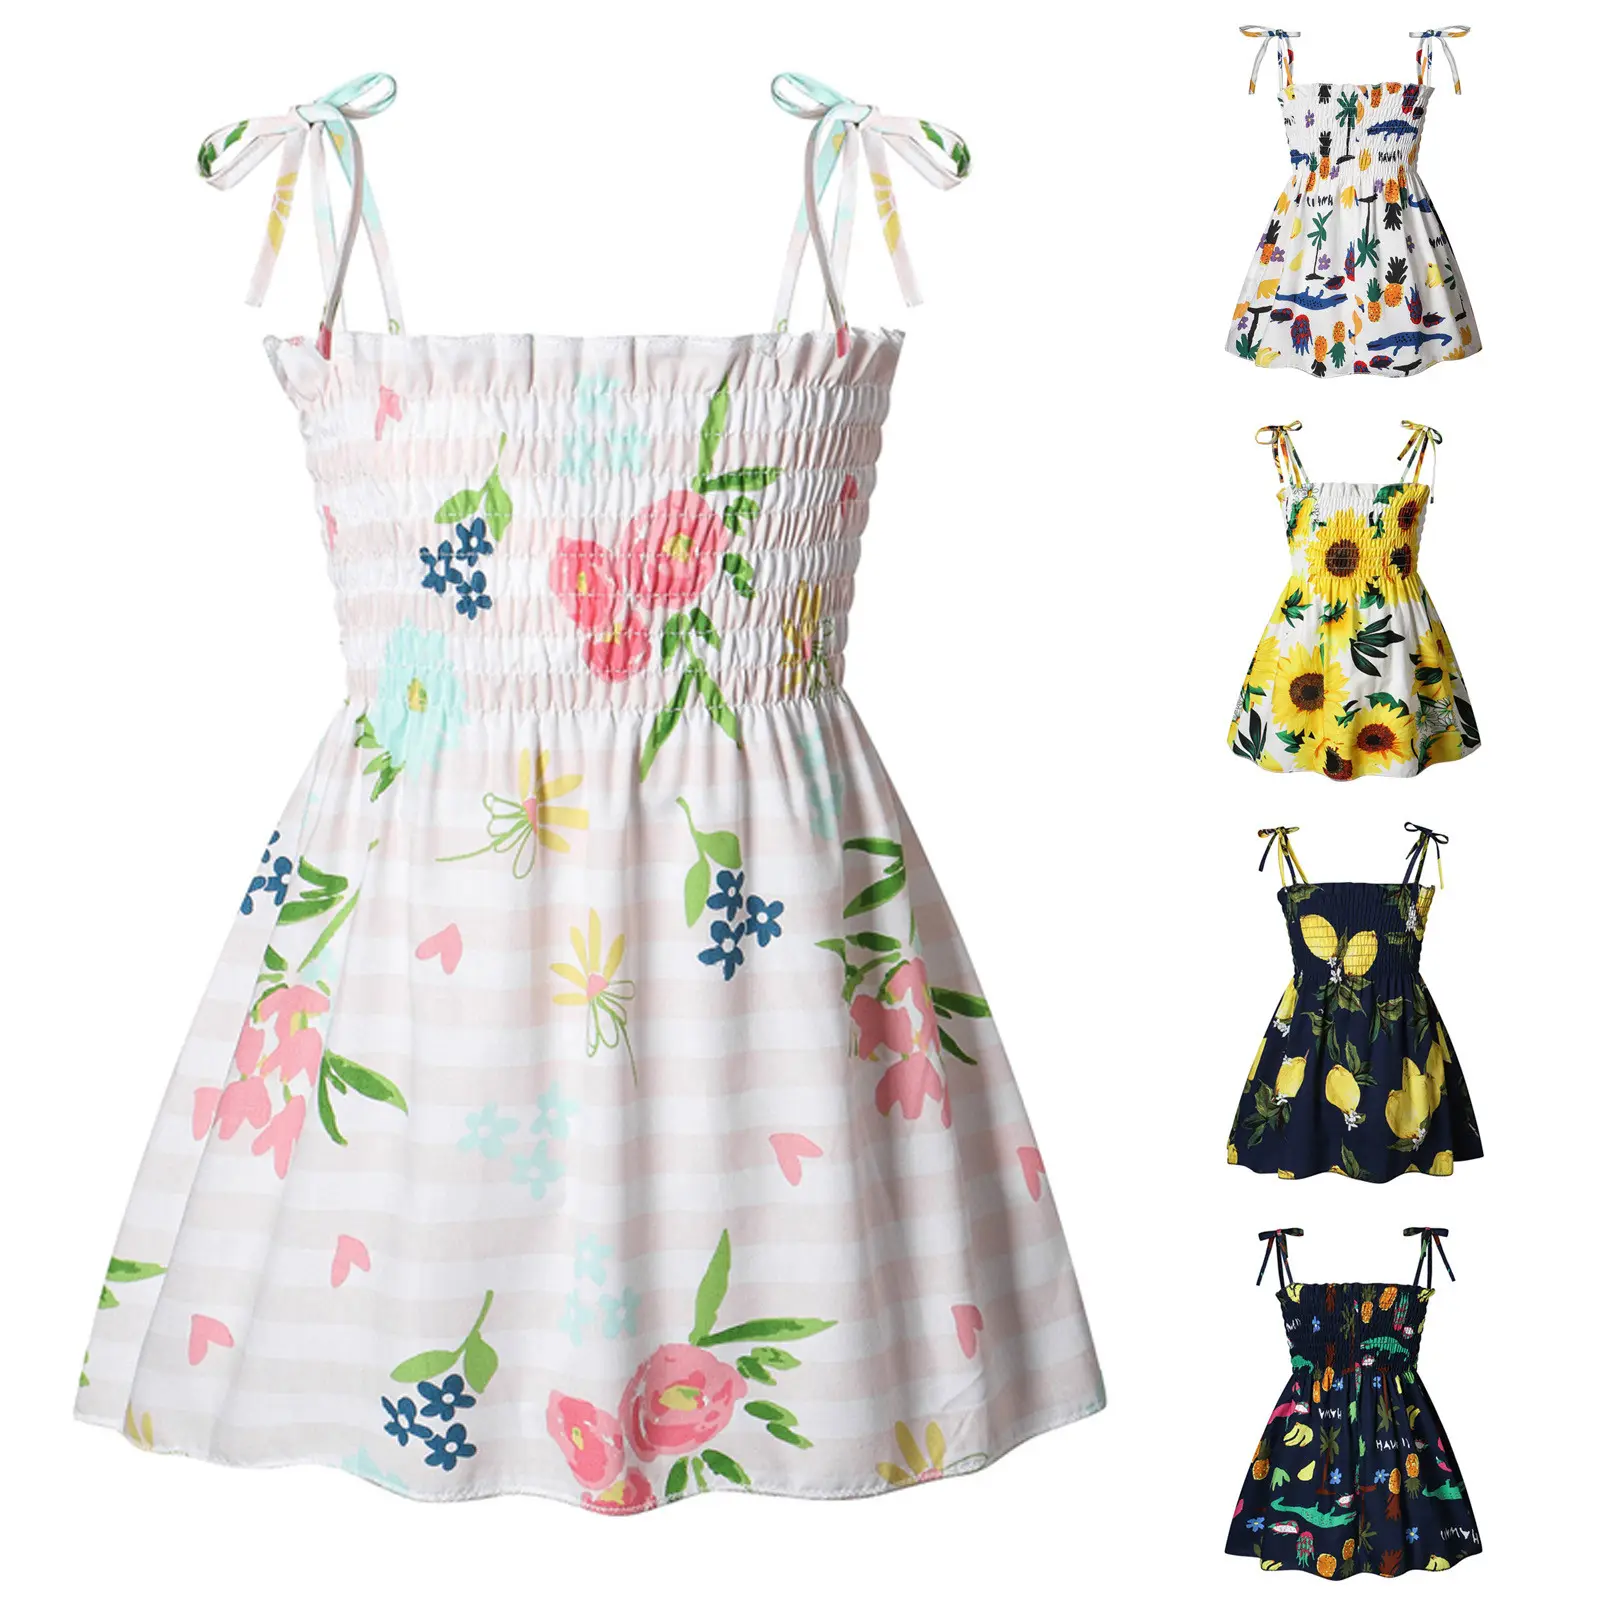 Conyson Kids Dresses Girls Summer Sleeveless Strap Princess Dress Cotton Flower Print Children Clothes Girl Casual Sundress